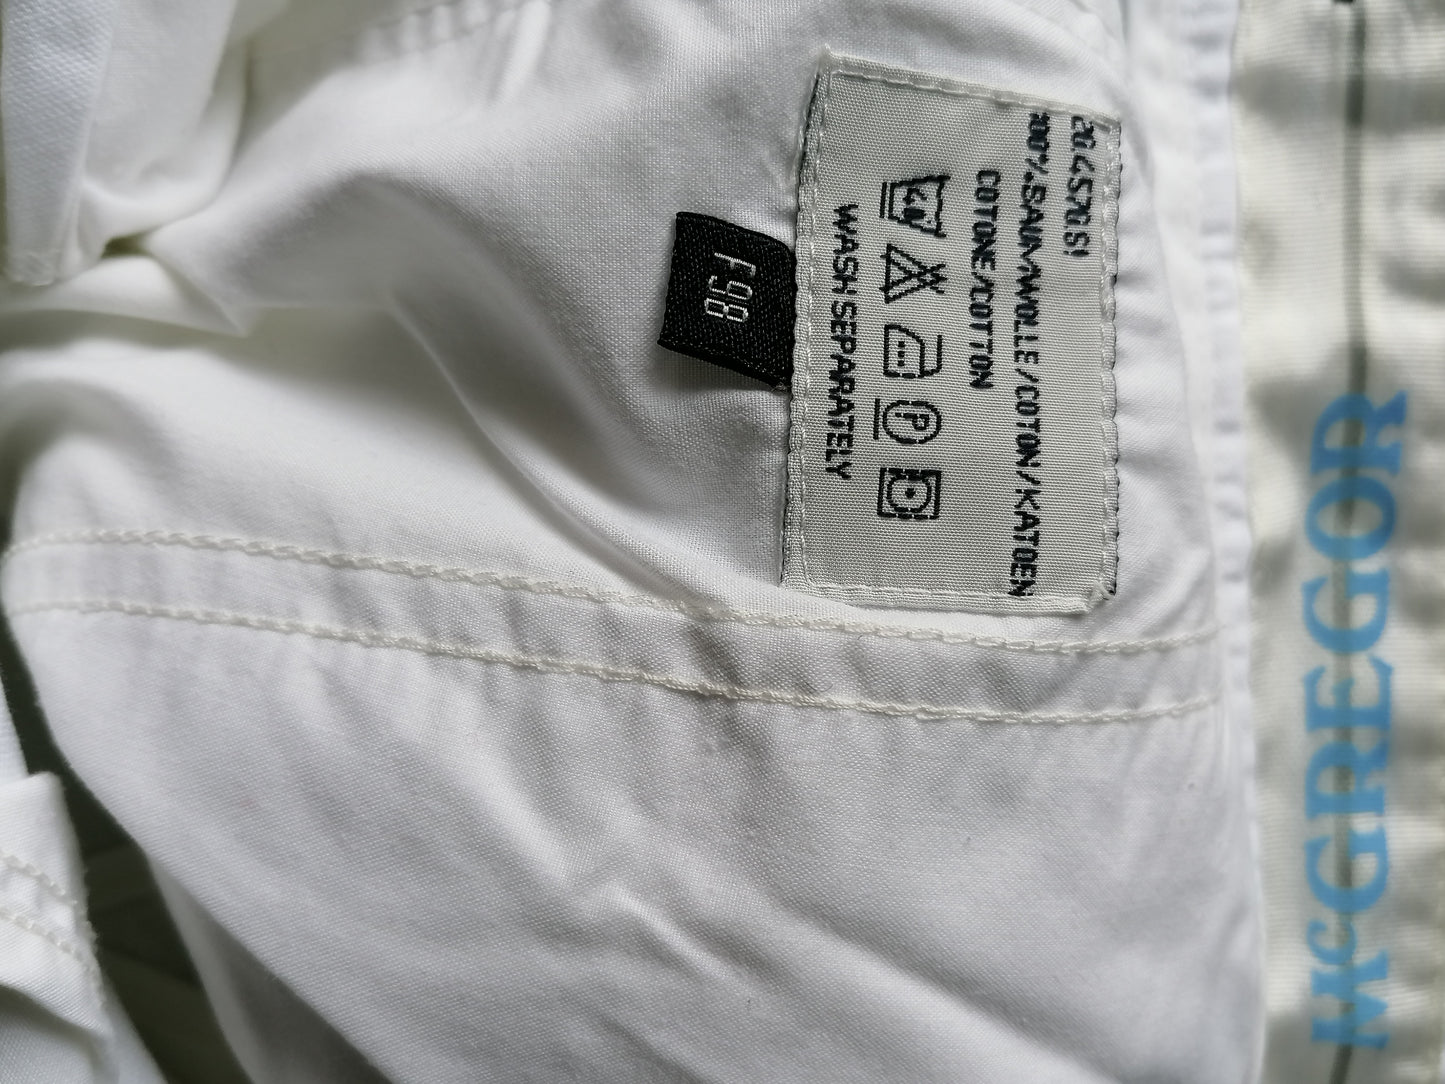 Pantalones McGregor. Blanco coloreado. El tamaño F98 se ve como las dimensiones iguales a un tamaño W31- L32.